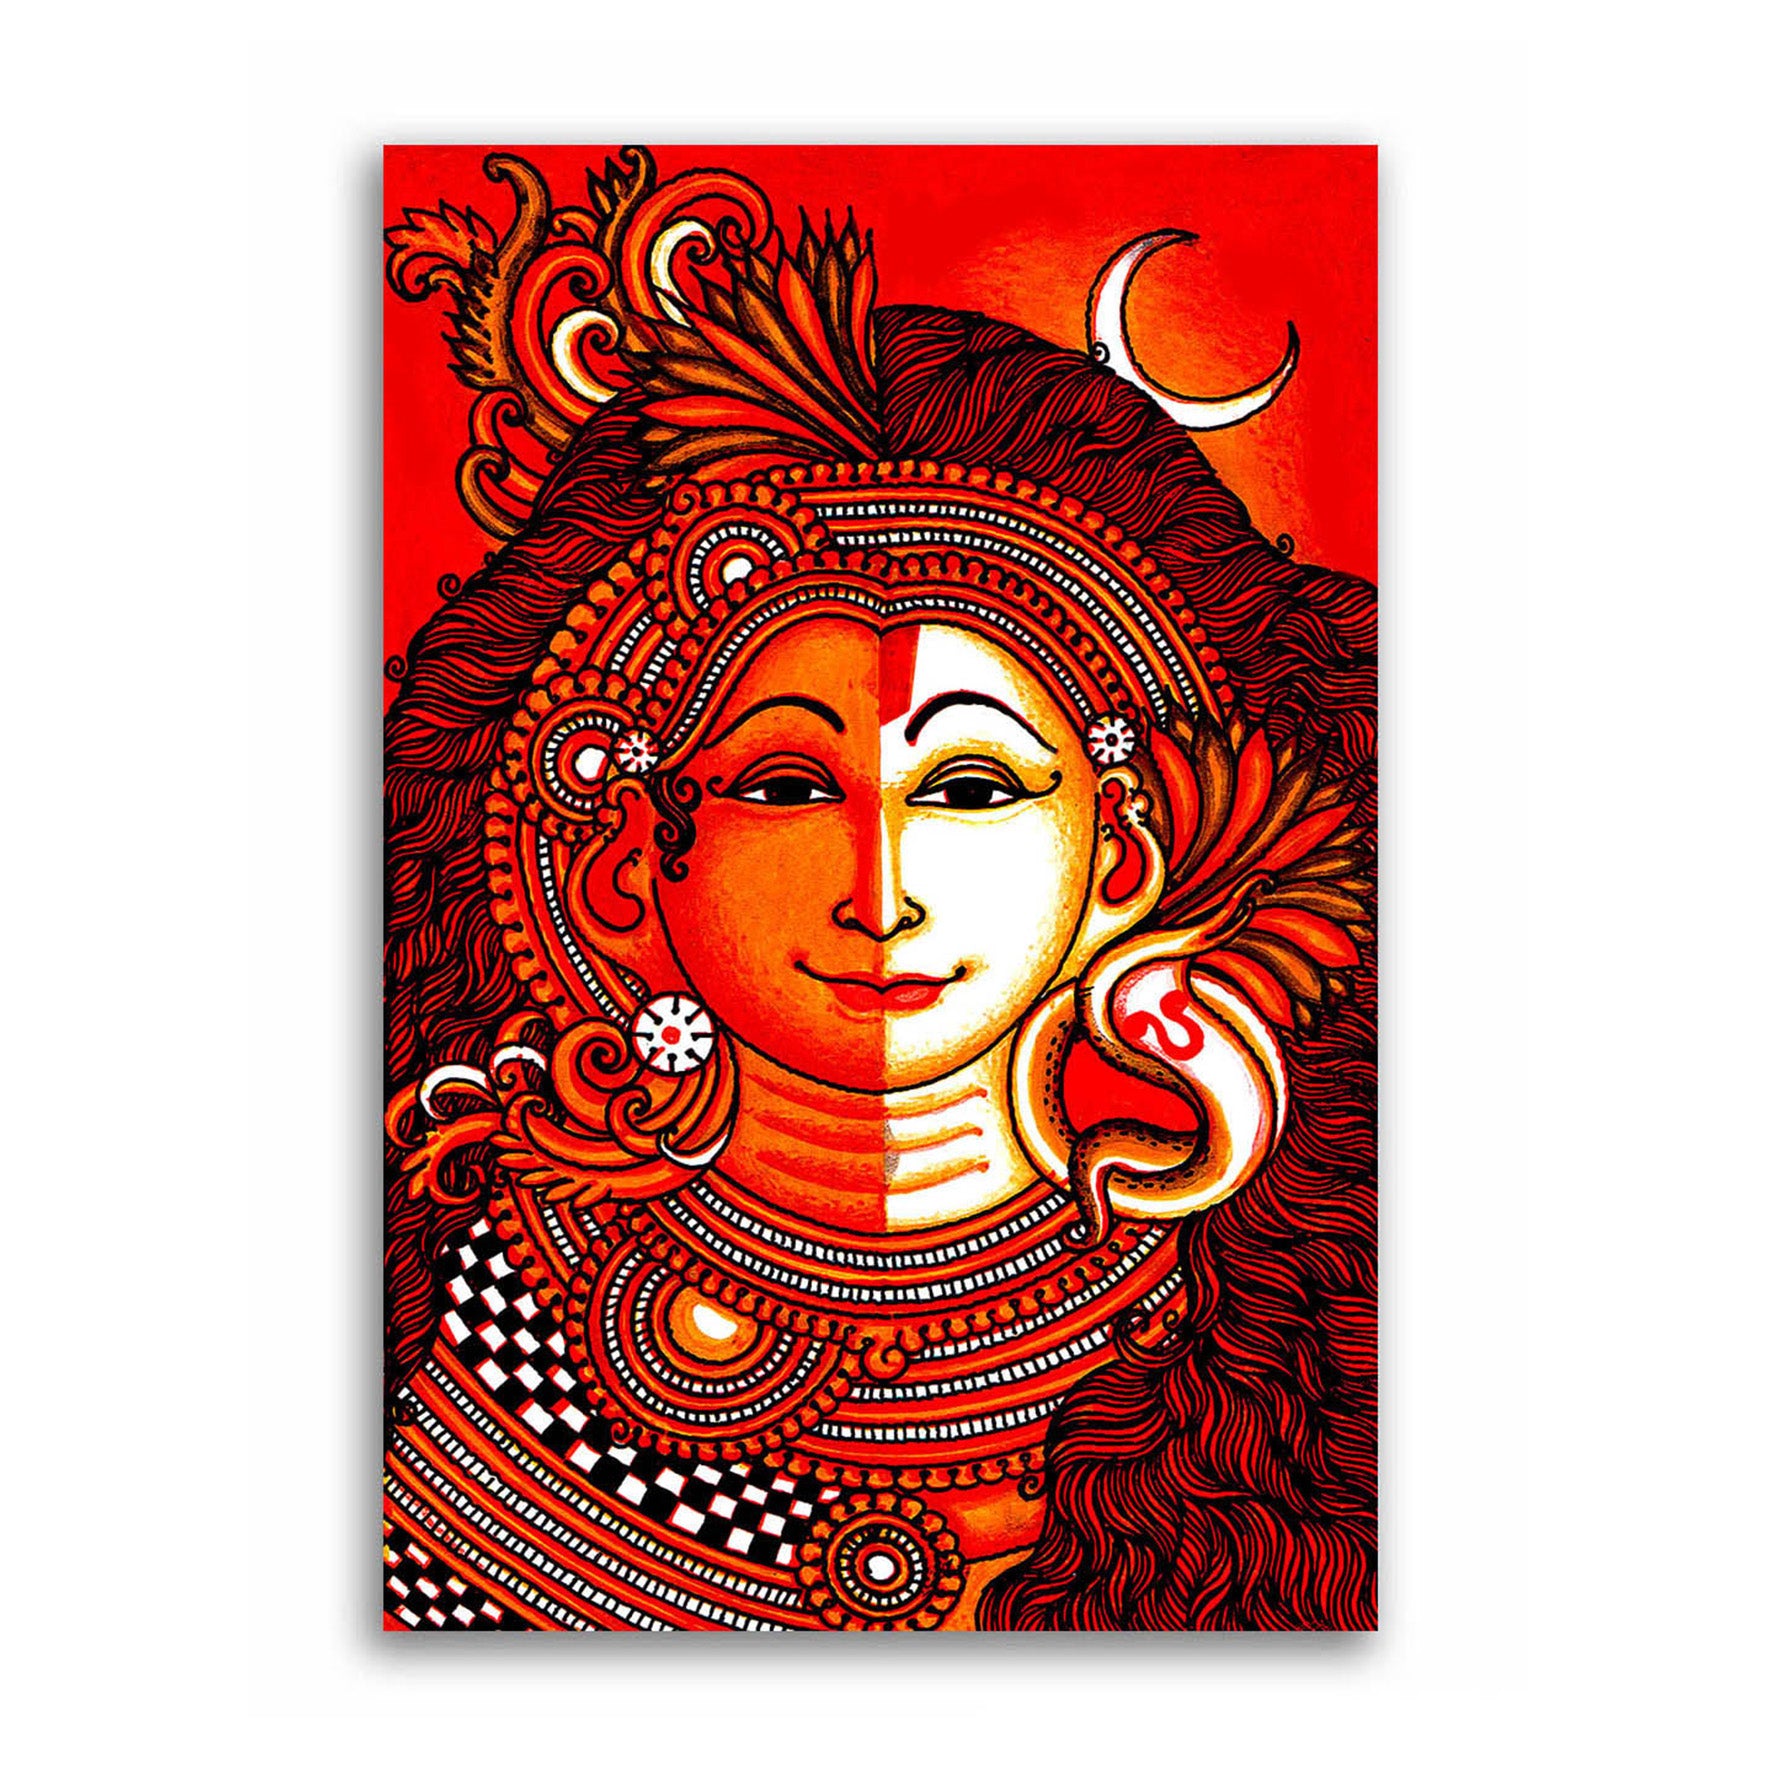 ShivaShakti | Shiva art, Lord shiva painting, Shiva shakti